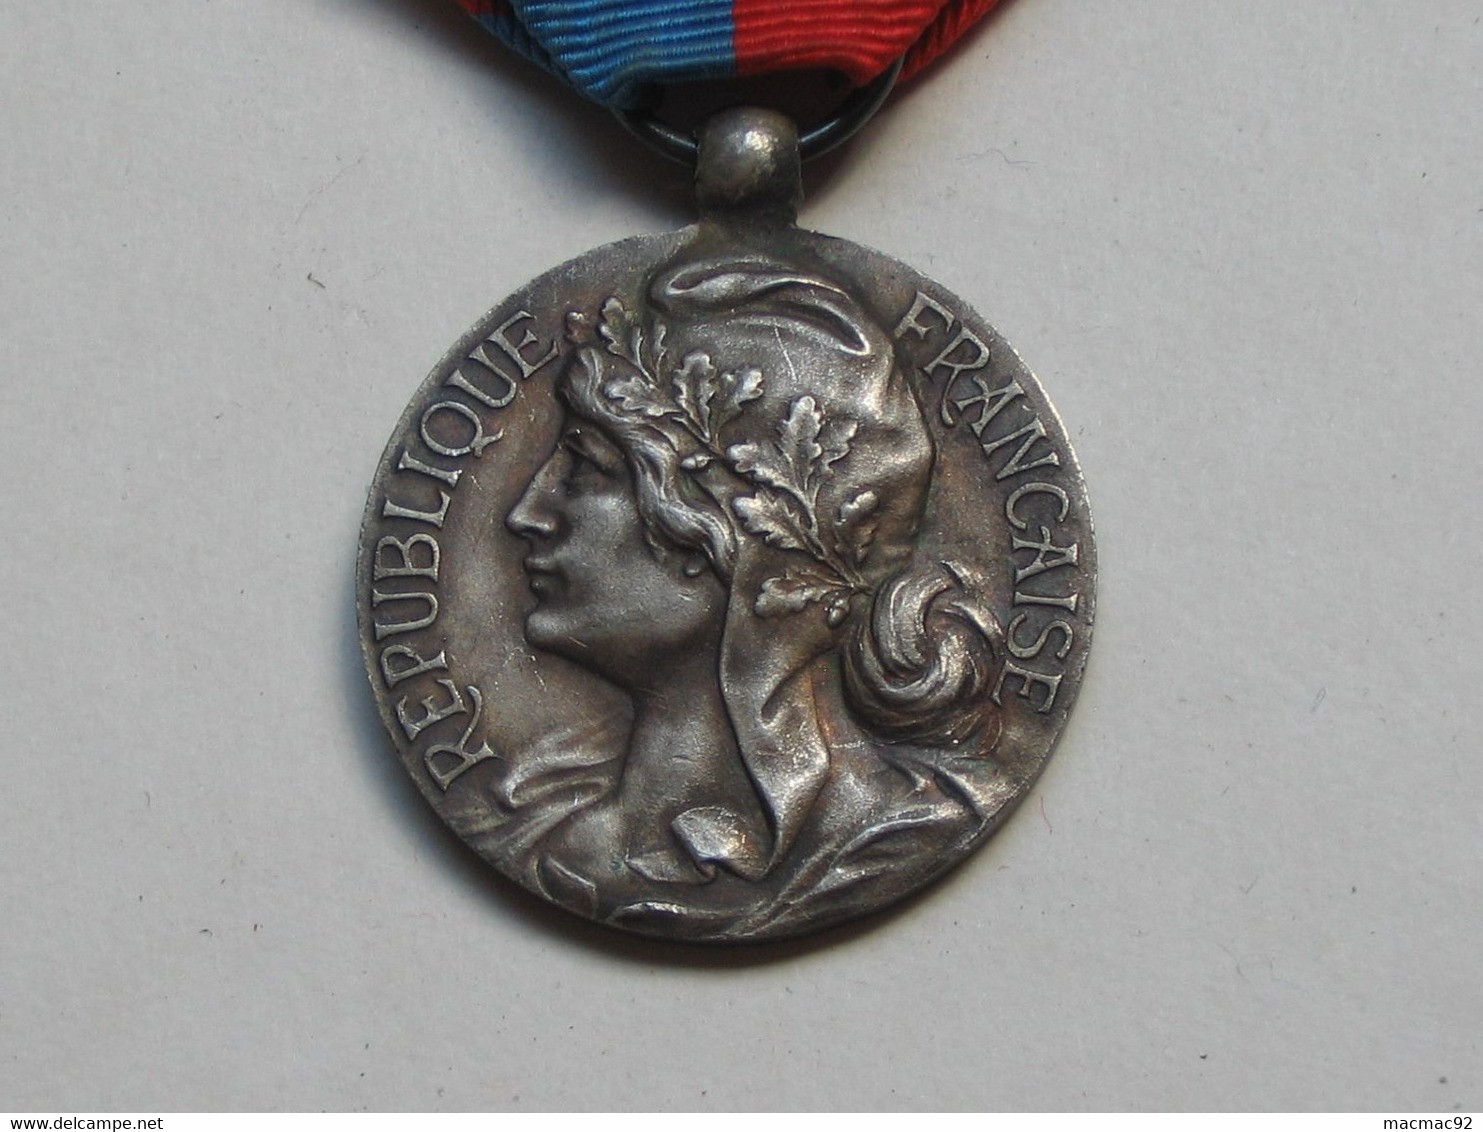 Médaille / Décoration - Décernée Par La Confédération Musicale De France + Barrette    **** EN ACHAT IMMEDIAT **** - France